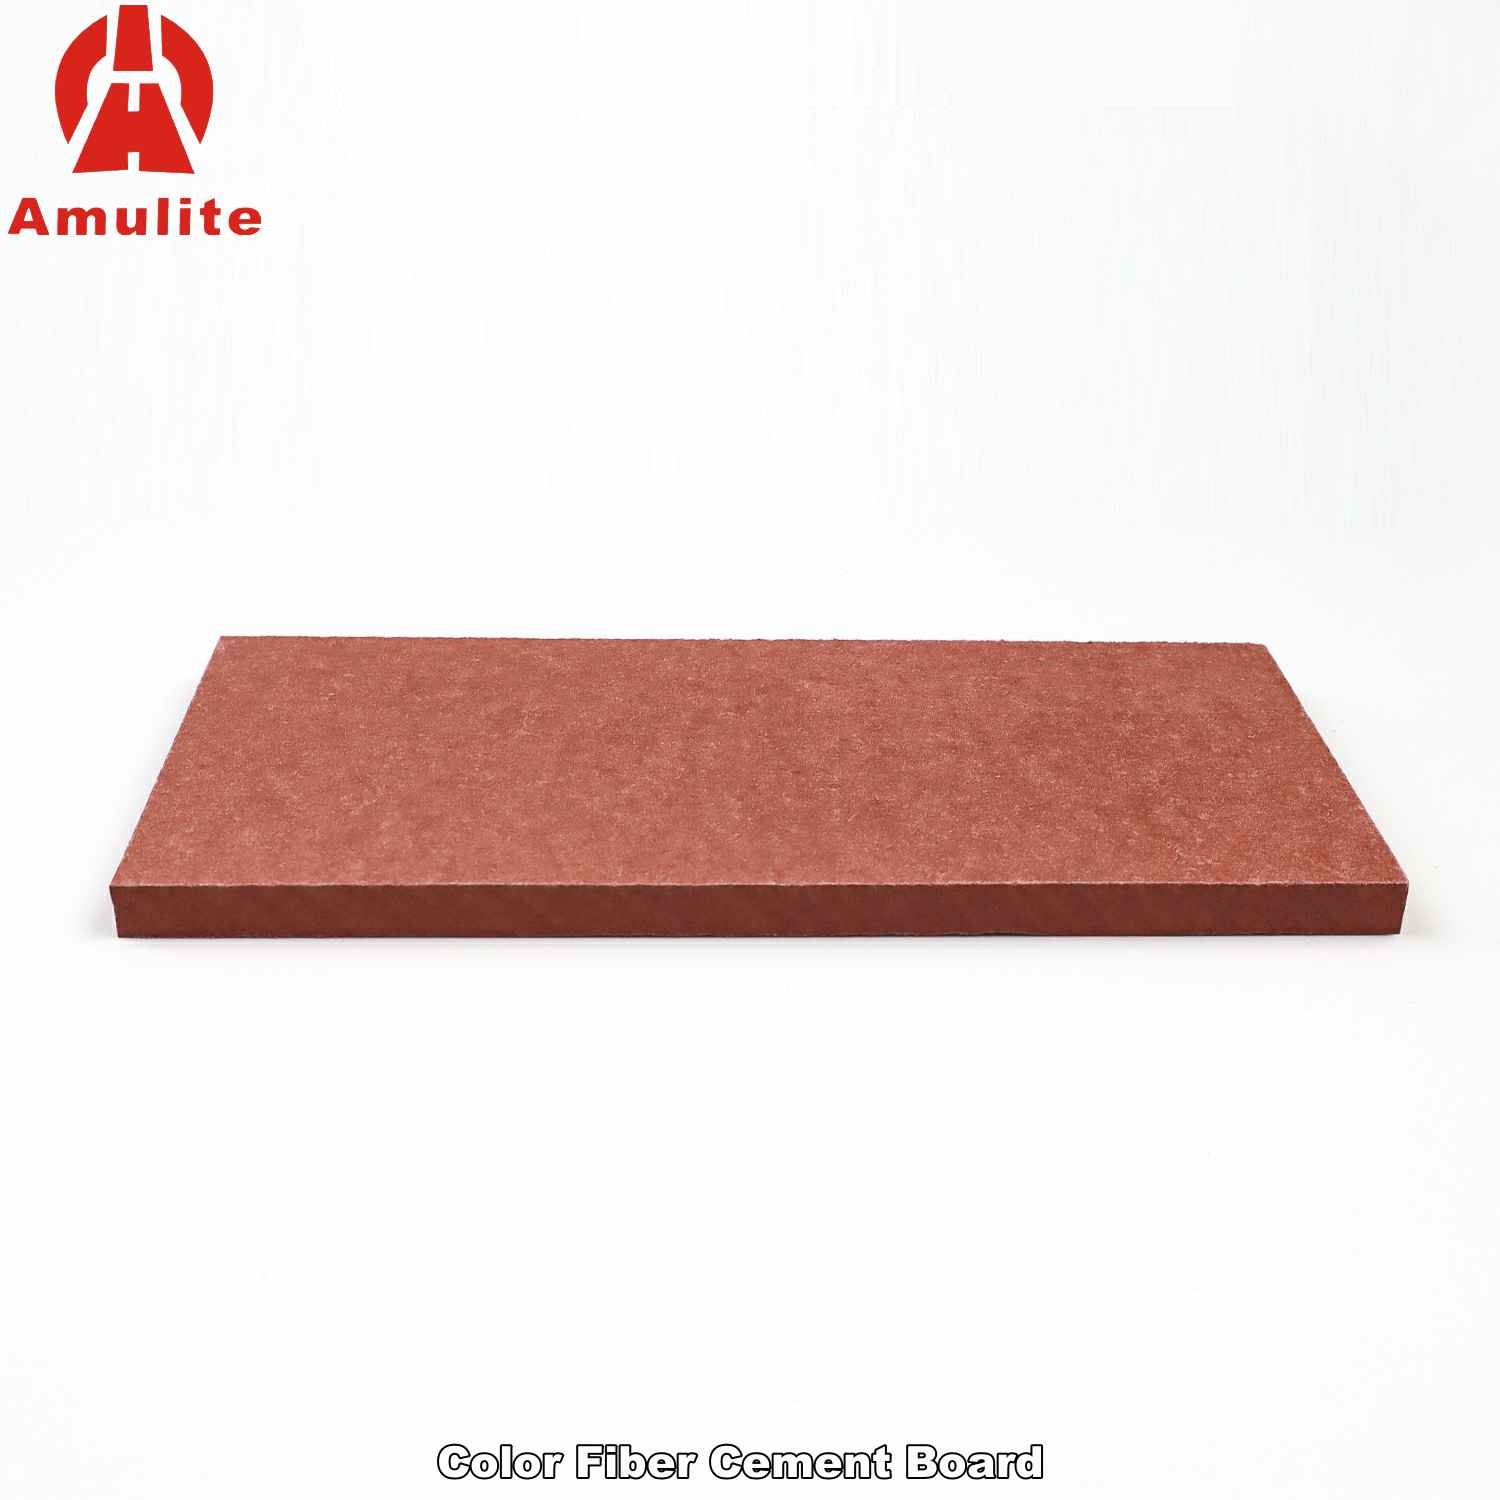 Color Fiber Cement Board (12)